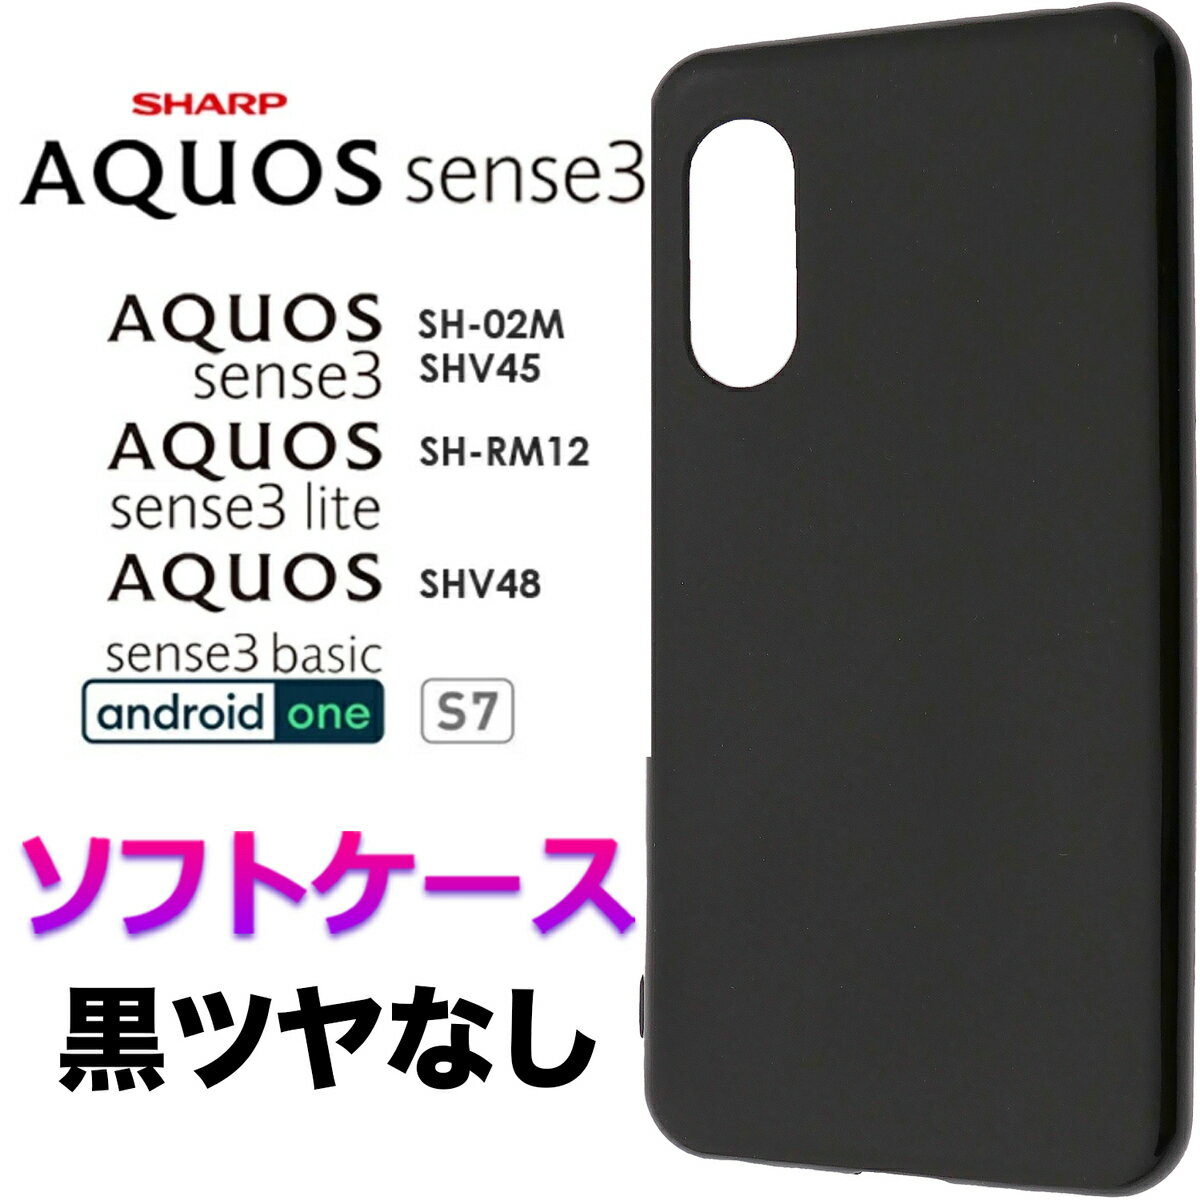 ブラック ソフトケース ツヤなし 艶なし AQUOS sense3 SH-02M SHV45 SH-M12 AQUOS sense3 lite SH-RM12 AQUOS sense3 basic shv48 Android One S7 シャープ アクオス センス スリー シンプル スマホケース スマホカバー バックカバー 黒 指紋防止 滑りにくい